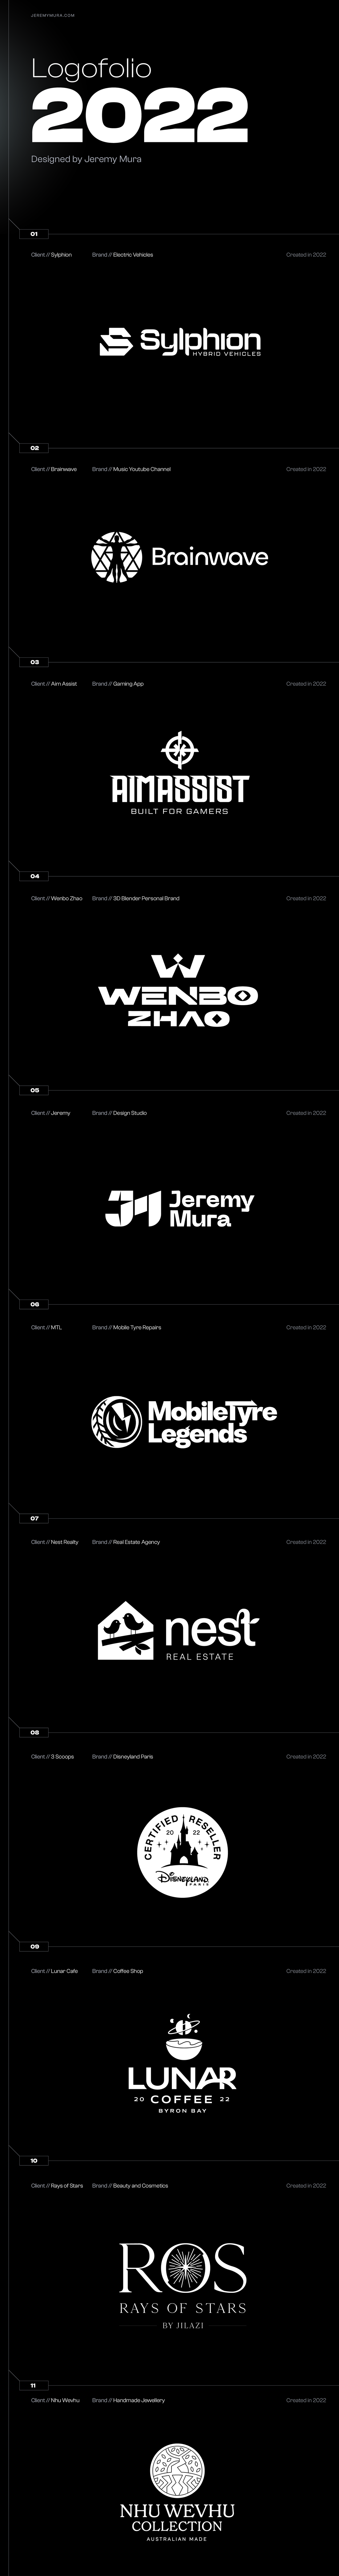 Brand Design brand identity identity logo Logo Design logos Logotype typography   vector visual identity